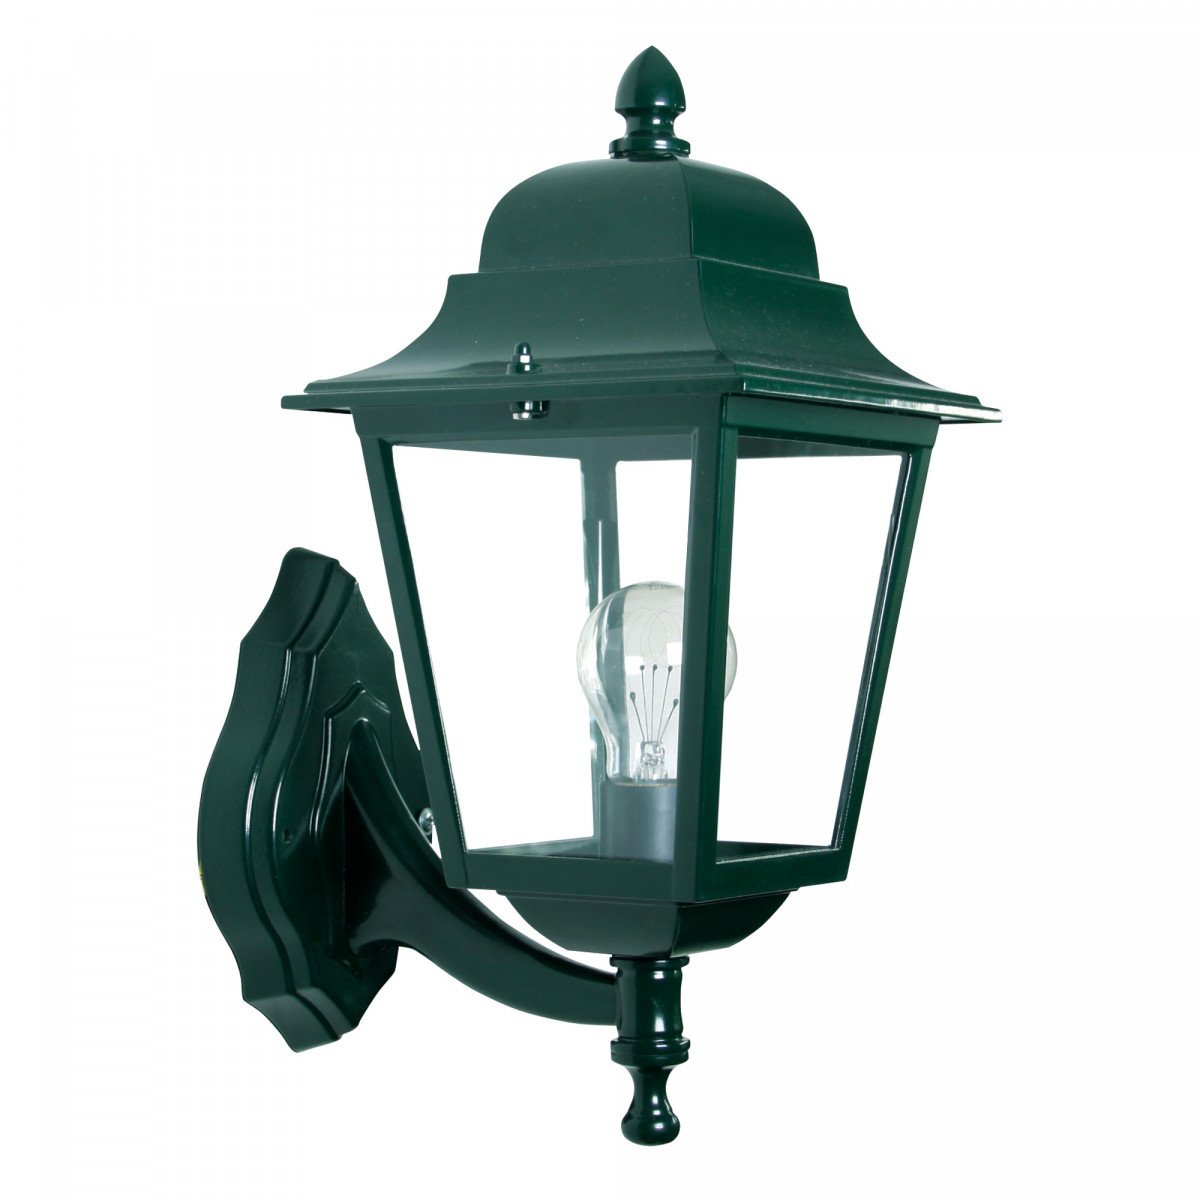 KS Verlichting buitenlamp vierkant in klassieke stijl, sierlijke steun met vierkante lantaarn, prachtige wandlantaarn met heldere beglazing en klassiek groene of stijlvol zwarte finish